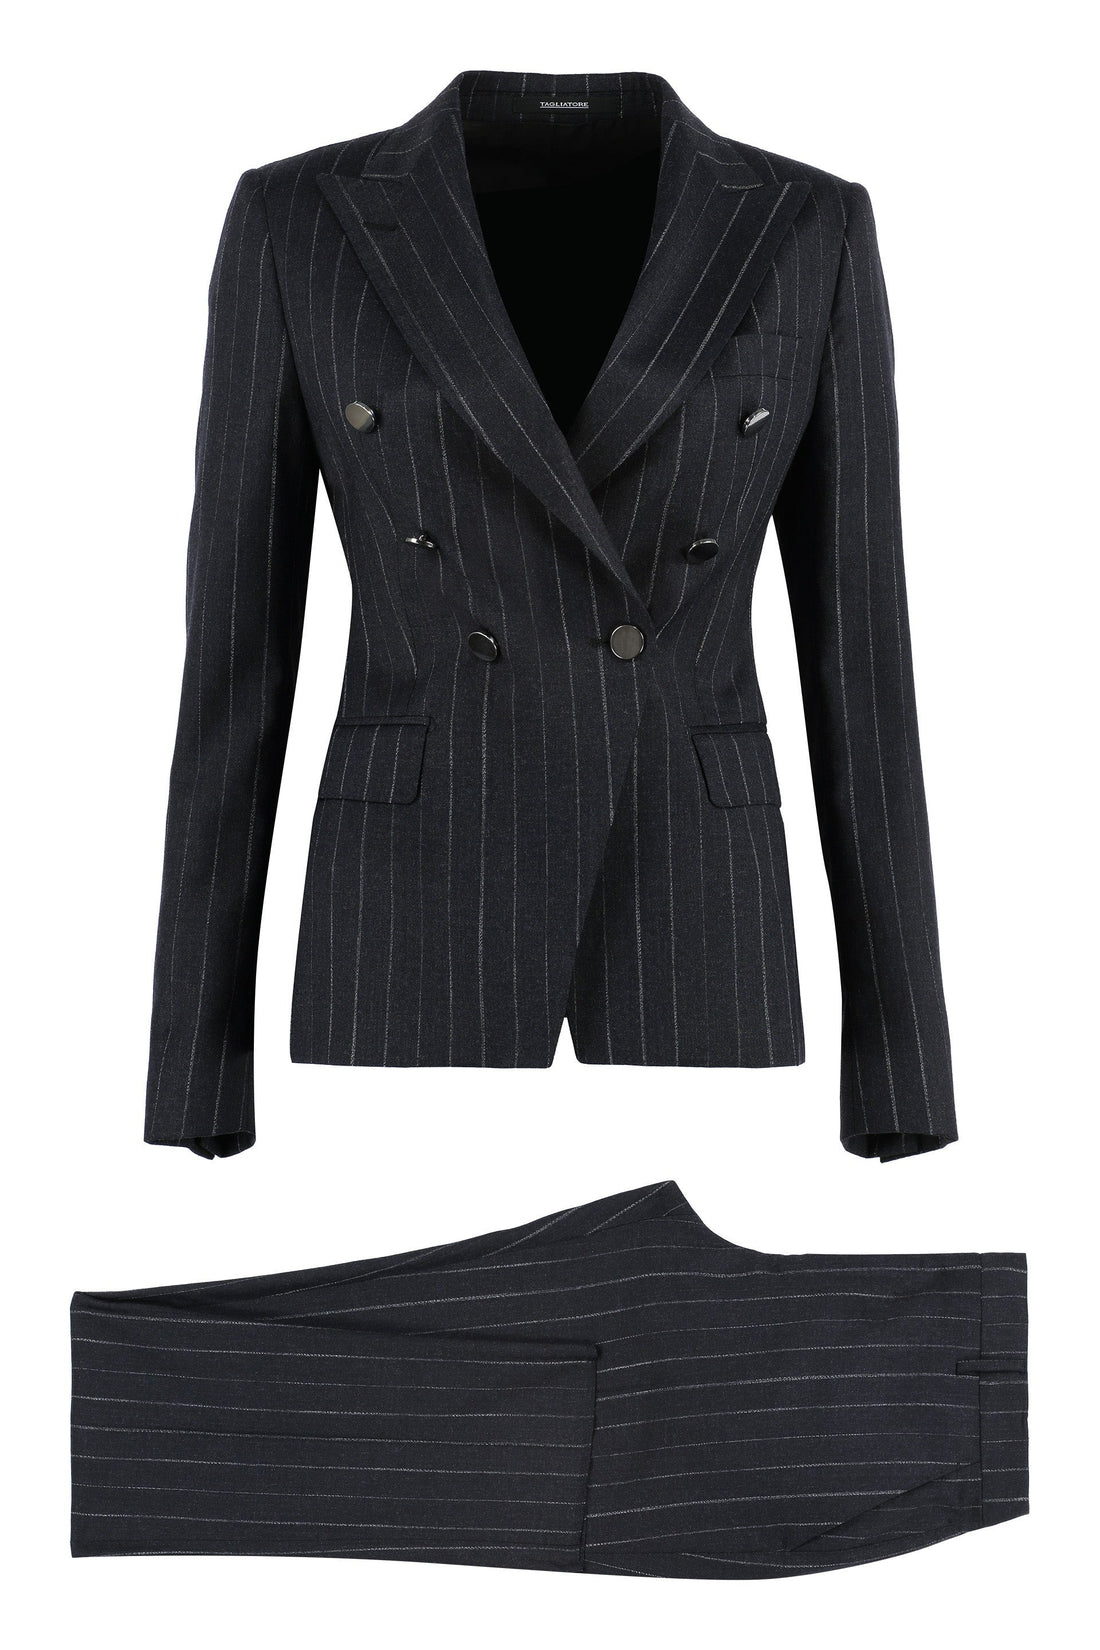 0205 Tagliatore-OUTLET-SALE-Two-piece wool suit-ARCHIVIST